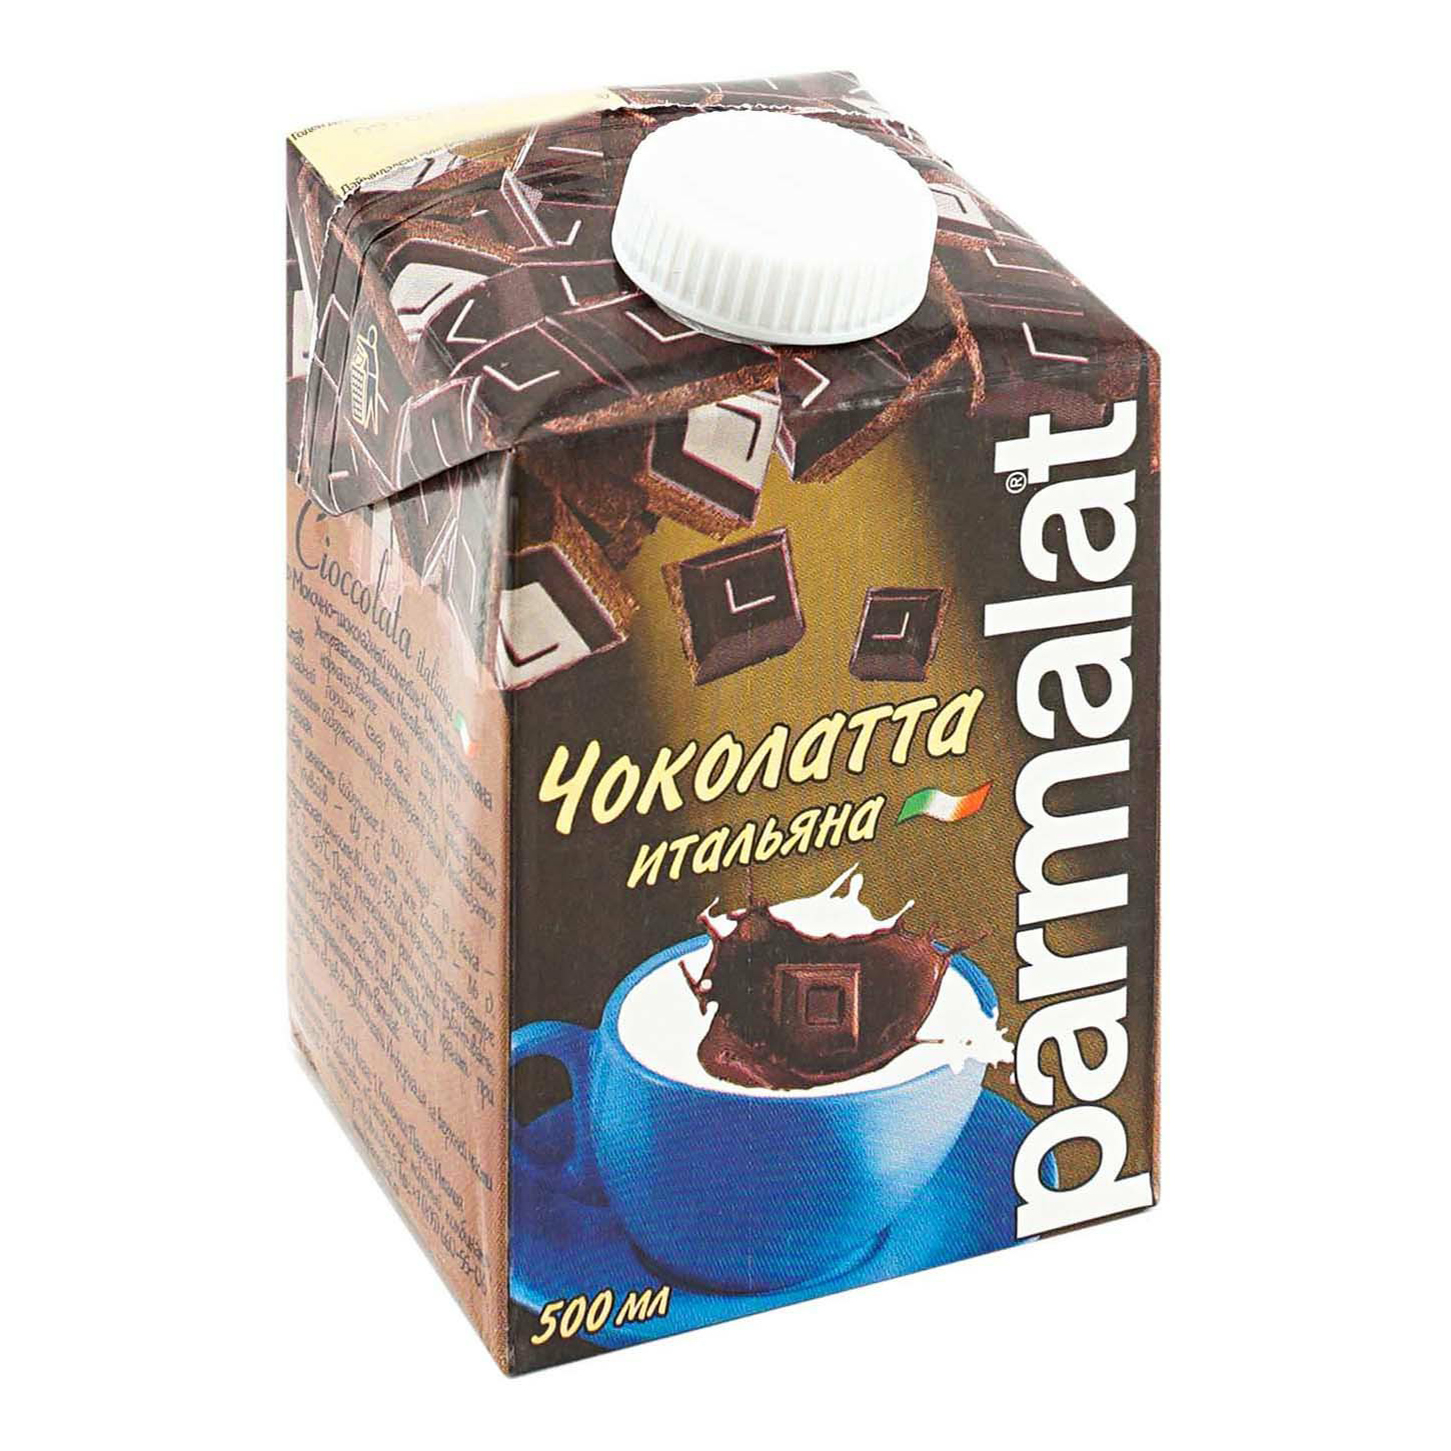 Молочный коктейль Parmalat Чоколатта Итальяна 1,9% 500 мл